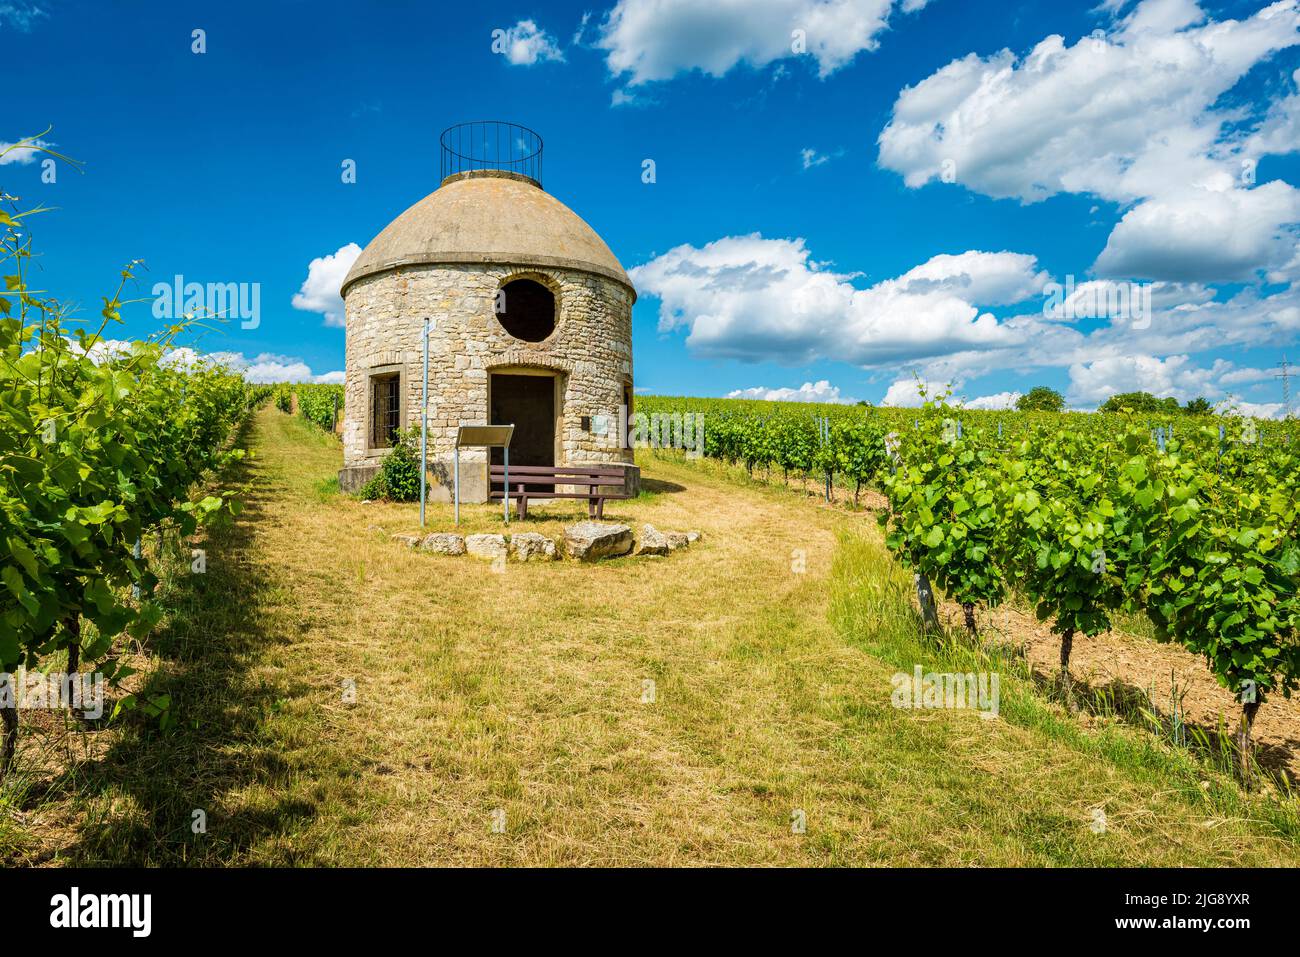 Babo-Hütte in Rheinhessen, ein Häuschen im Weinberg, sogenannter Trullo, in Bezug auf ähnliche Häuschen in Apulien, dient als Unterschlupf für die Winzer bei schlechtem Wetter, Stockfoto